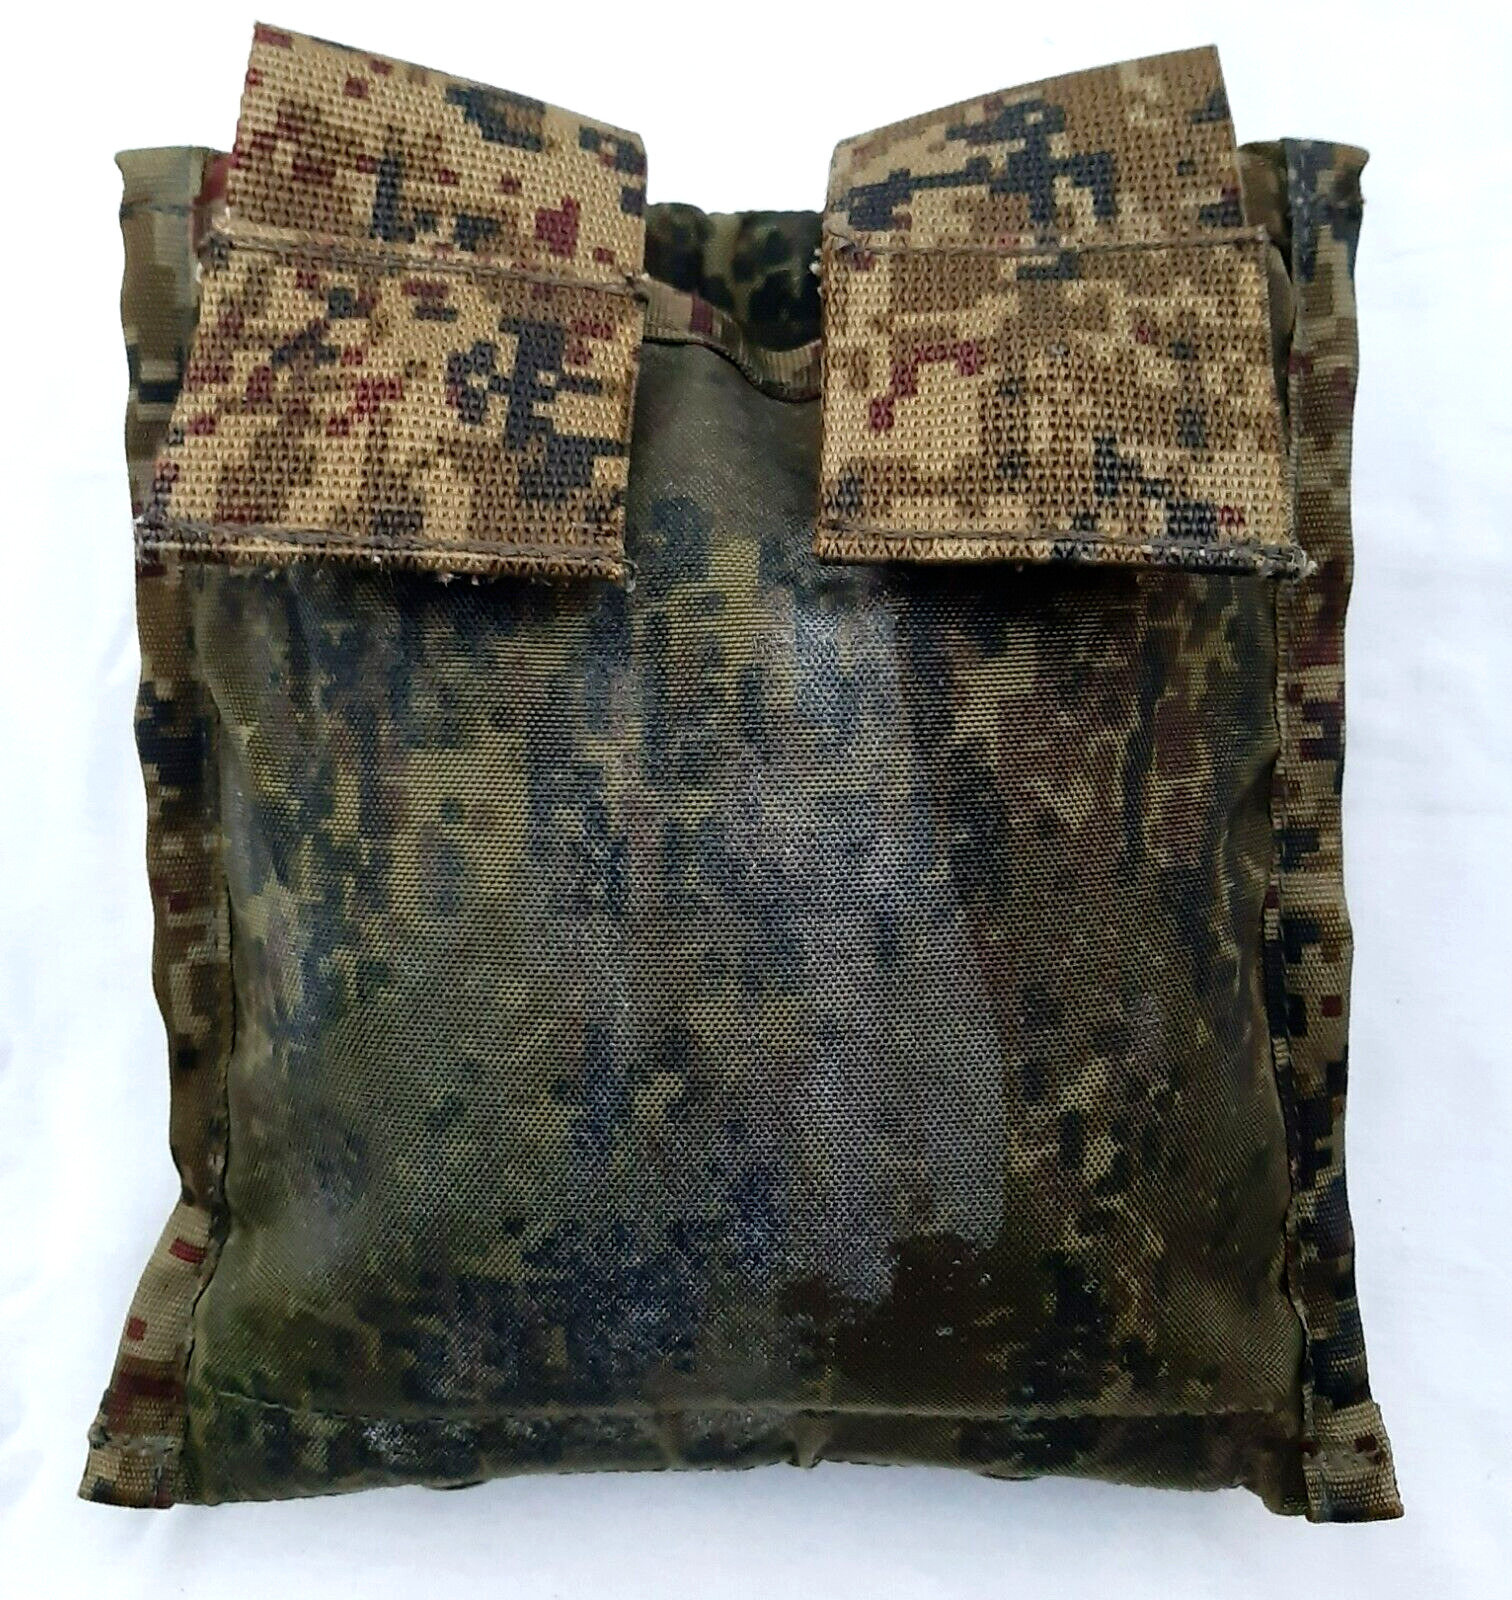 Ukraine Trophy Pouch Bag for 6b45 Vest Plate Holder Carrier Armor Uniform Camo